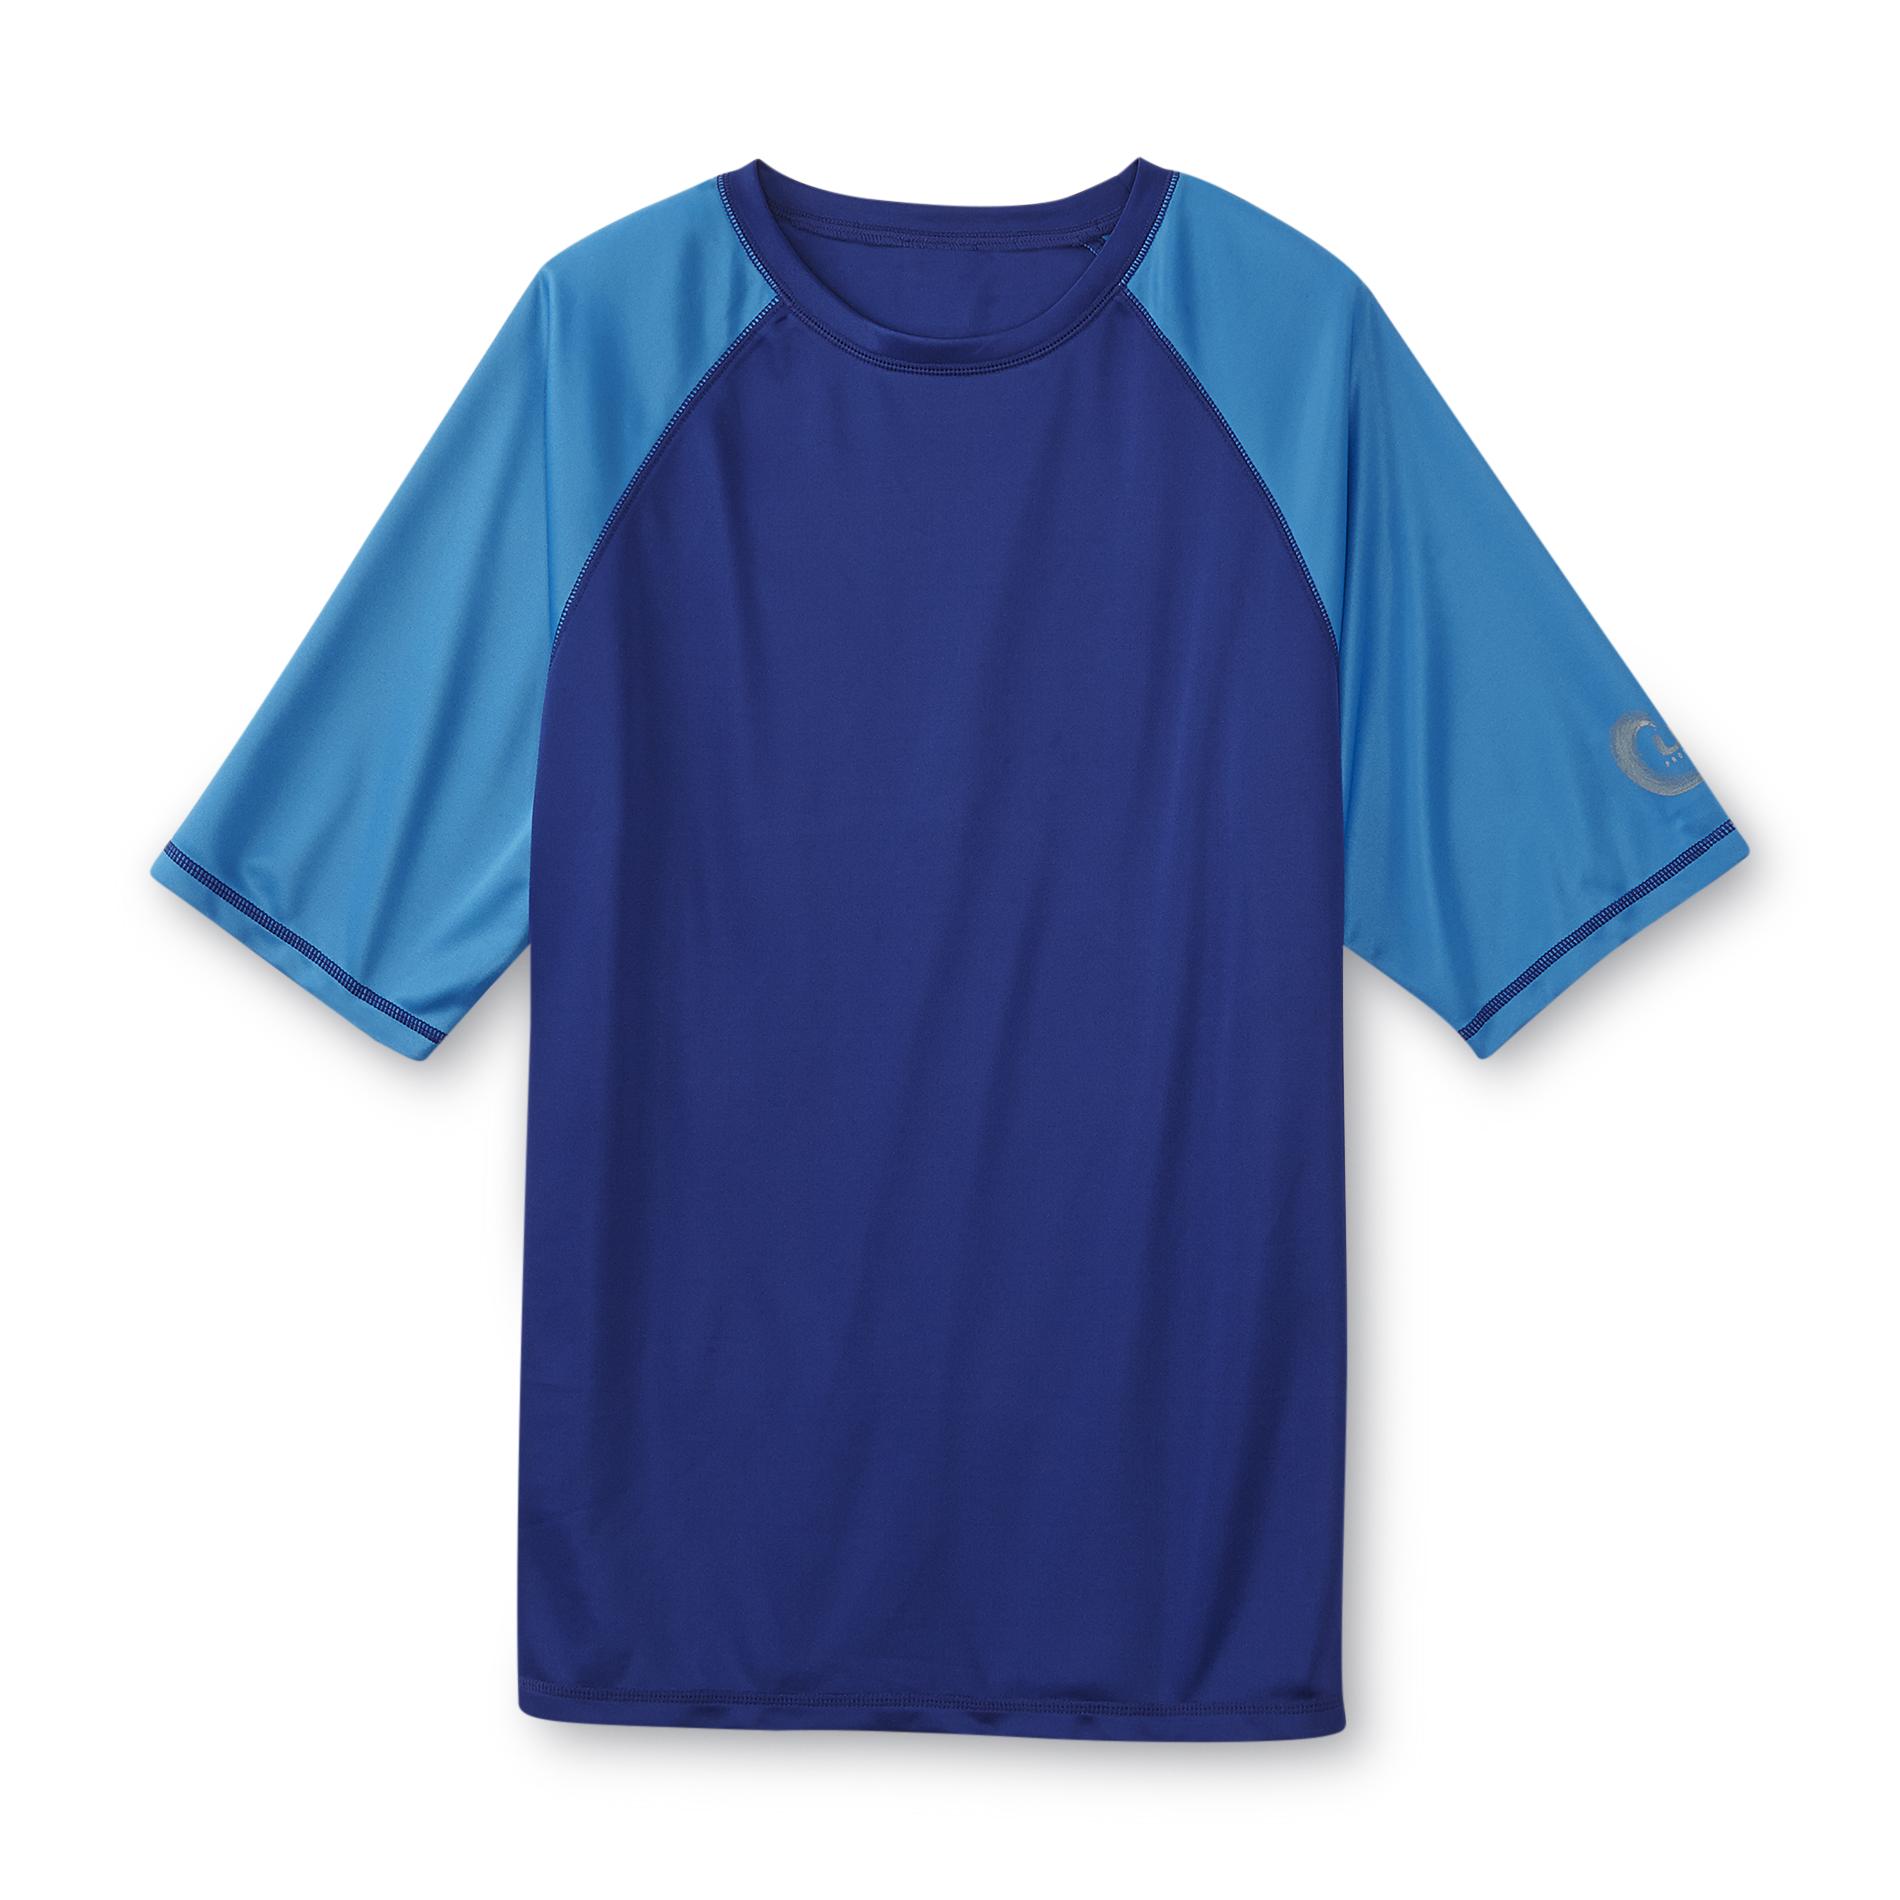 Joe Boxer Men's Loose-fit Rashguard Swim Shirt - Colorblock